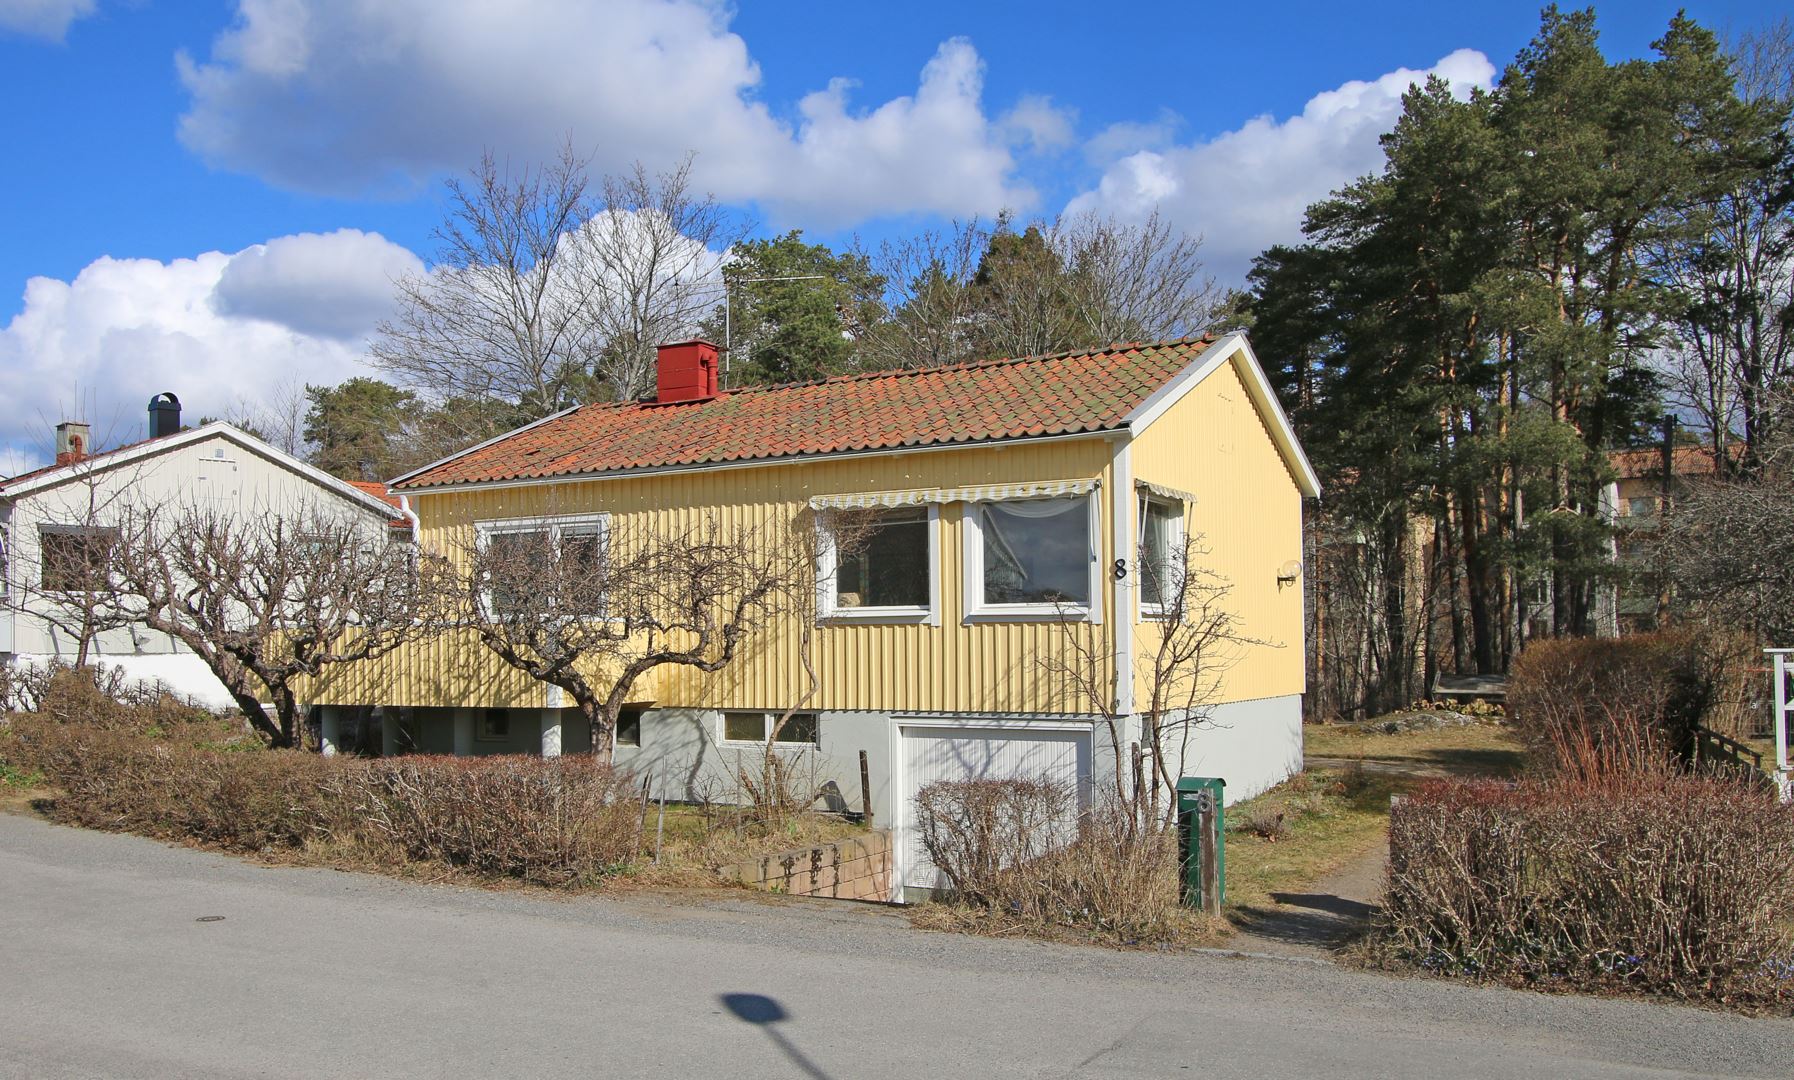 Bostadsbild från Tapetserarvägen 8, Såld i Bromma - Olovslund, Stockholm